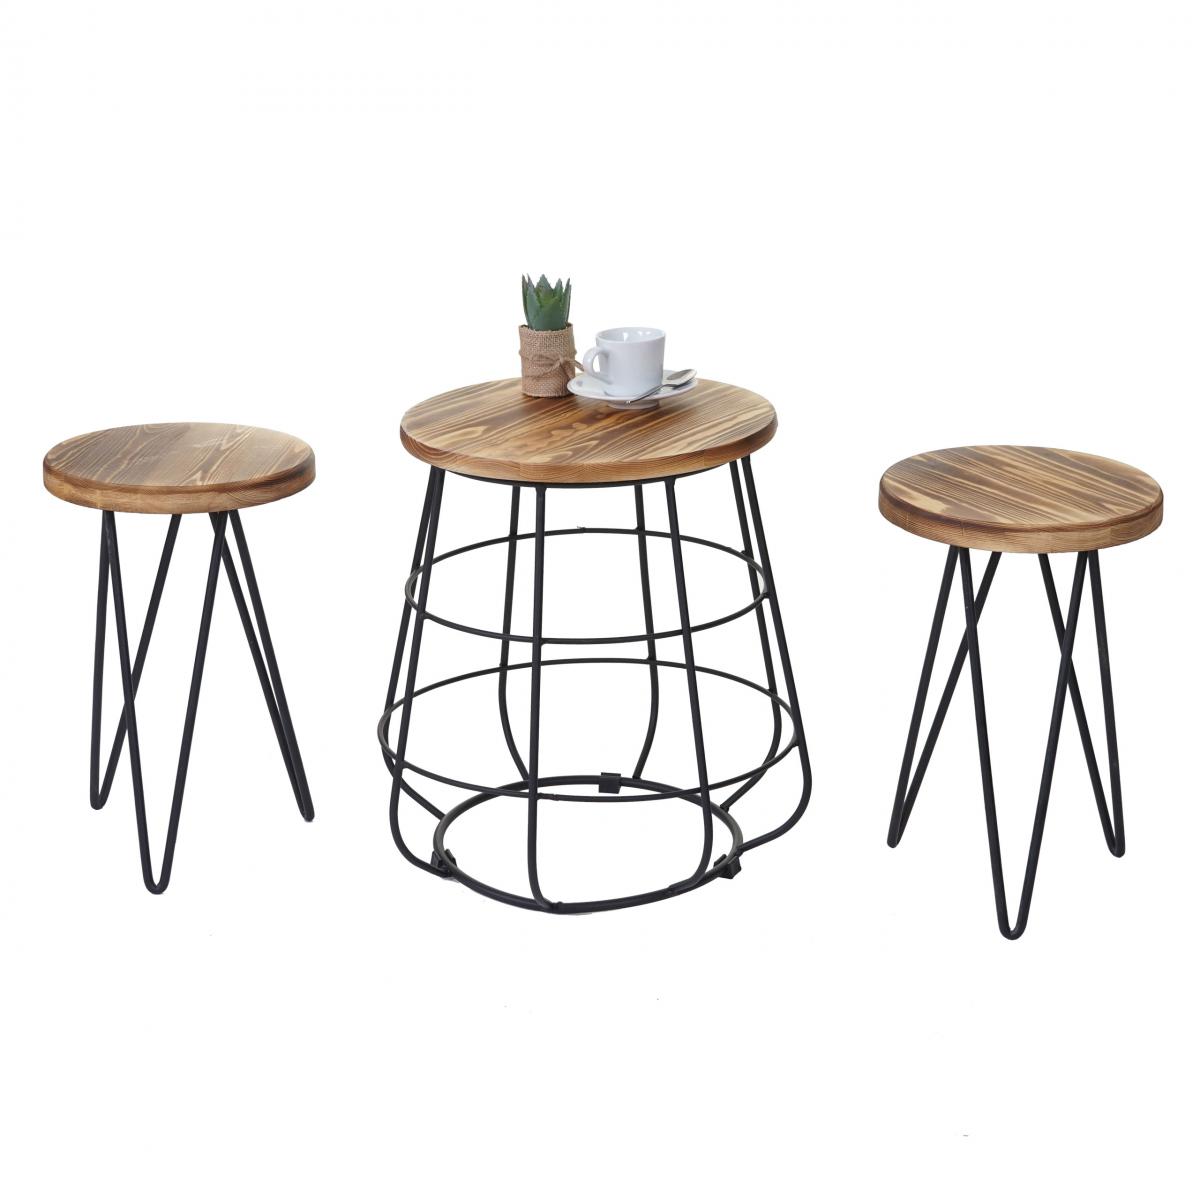 Mendler - 2x tabouret avec table HWC-A80, ensemble, desgin industriel, bois naturel - Tabourets